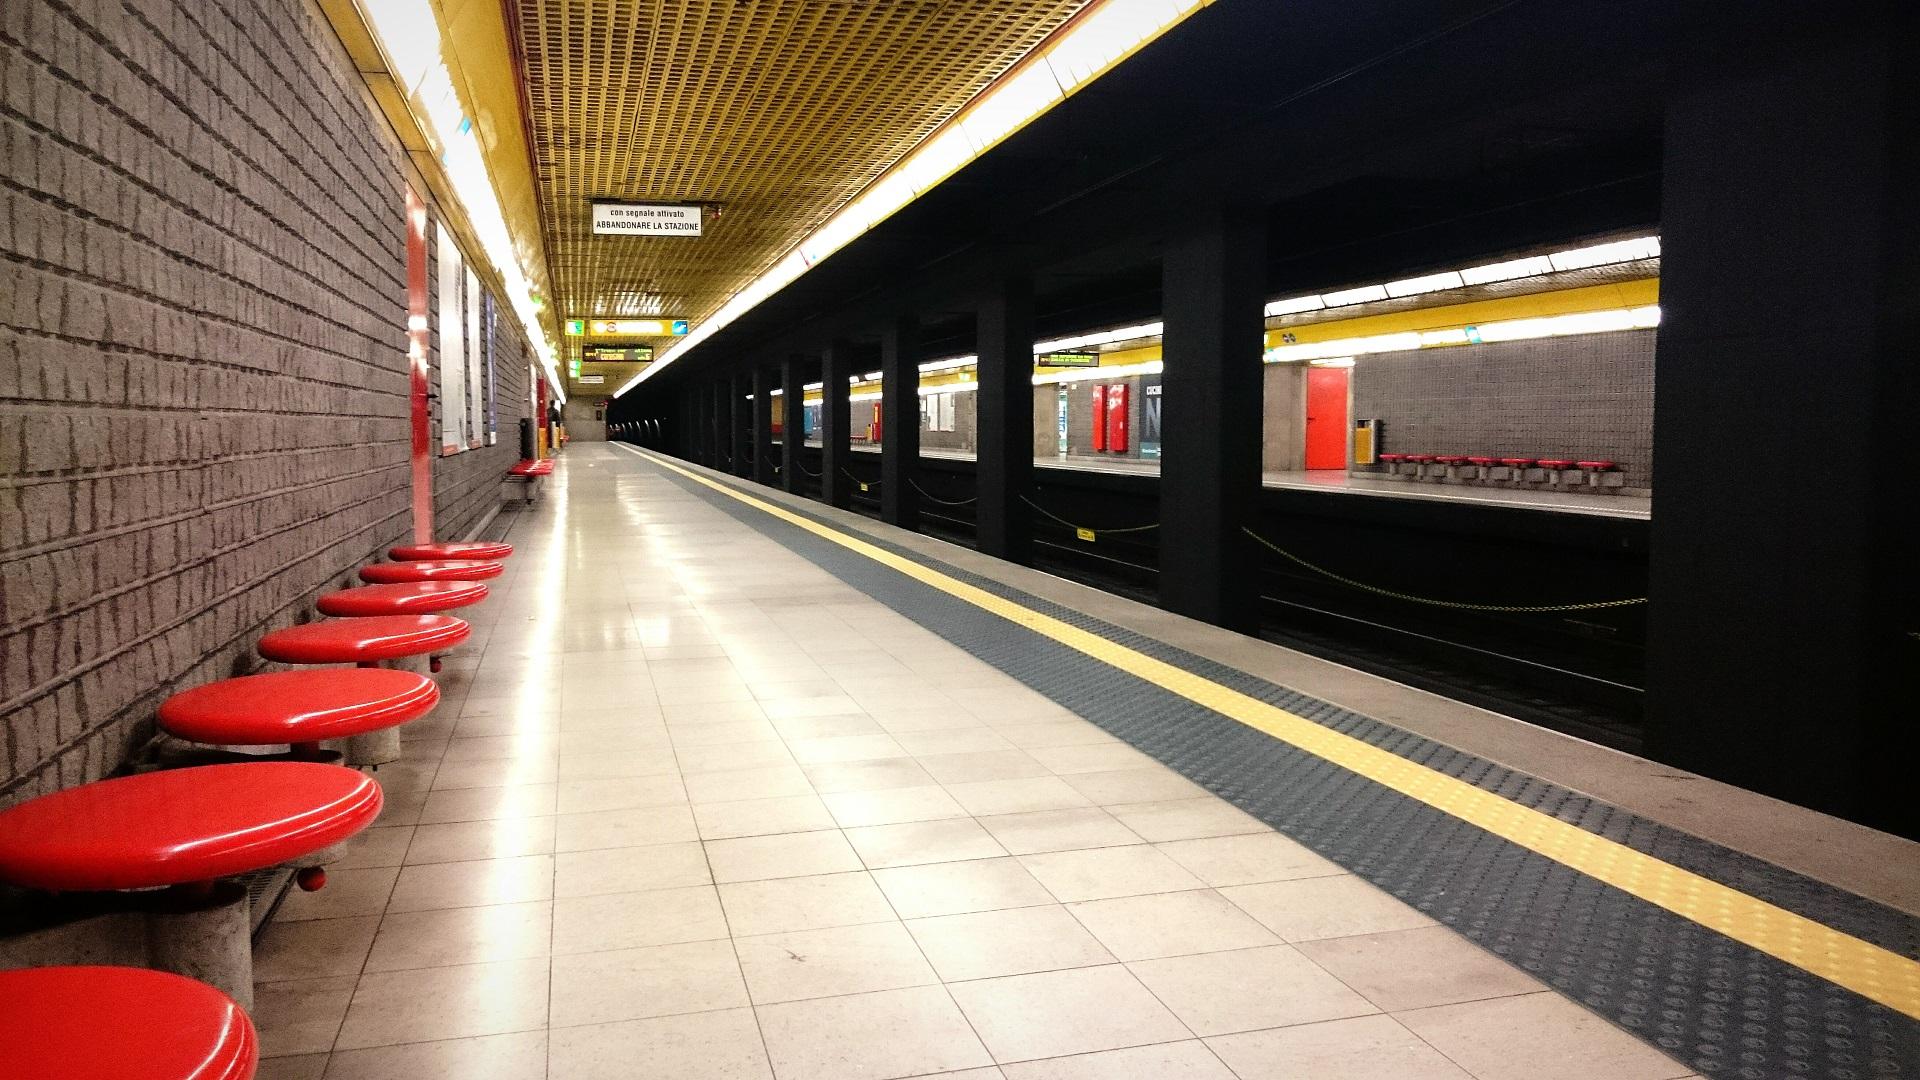 Le stazioni della metropolitana milanese sono caratterizzate da un'integrazione - molto innovativa per l’epoca - di elementi architettonici, segnaletici e d’arredo